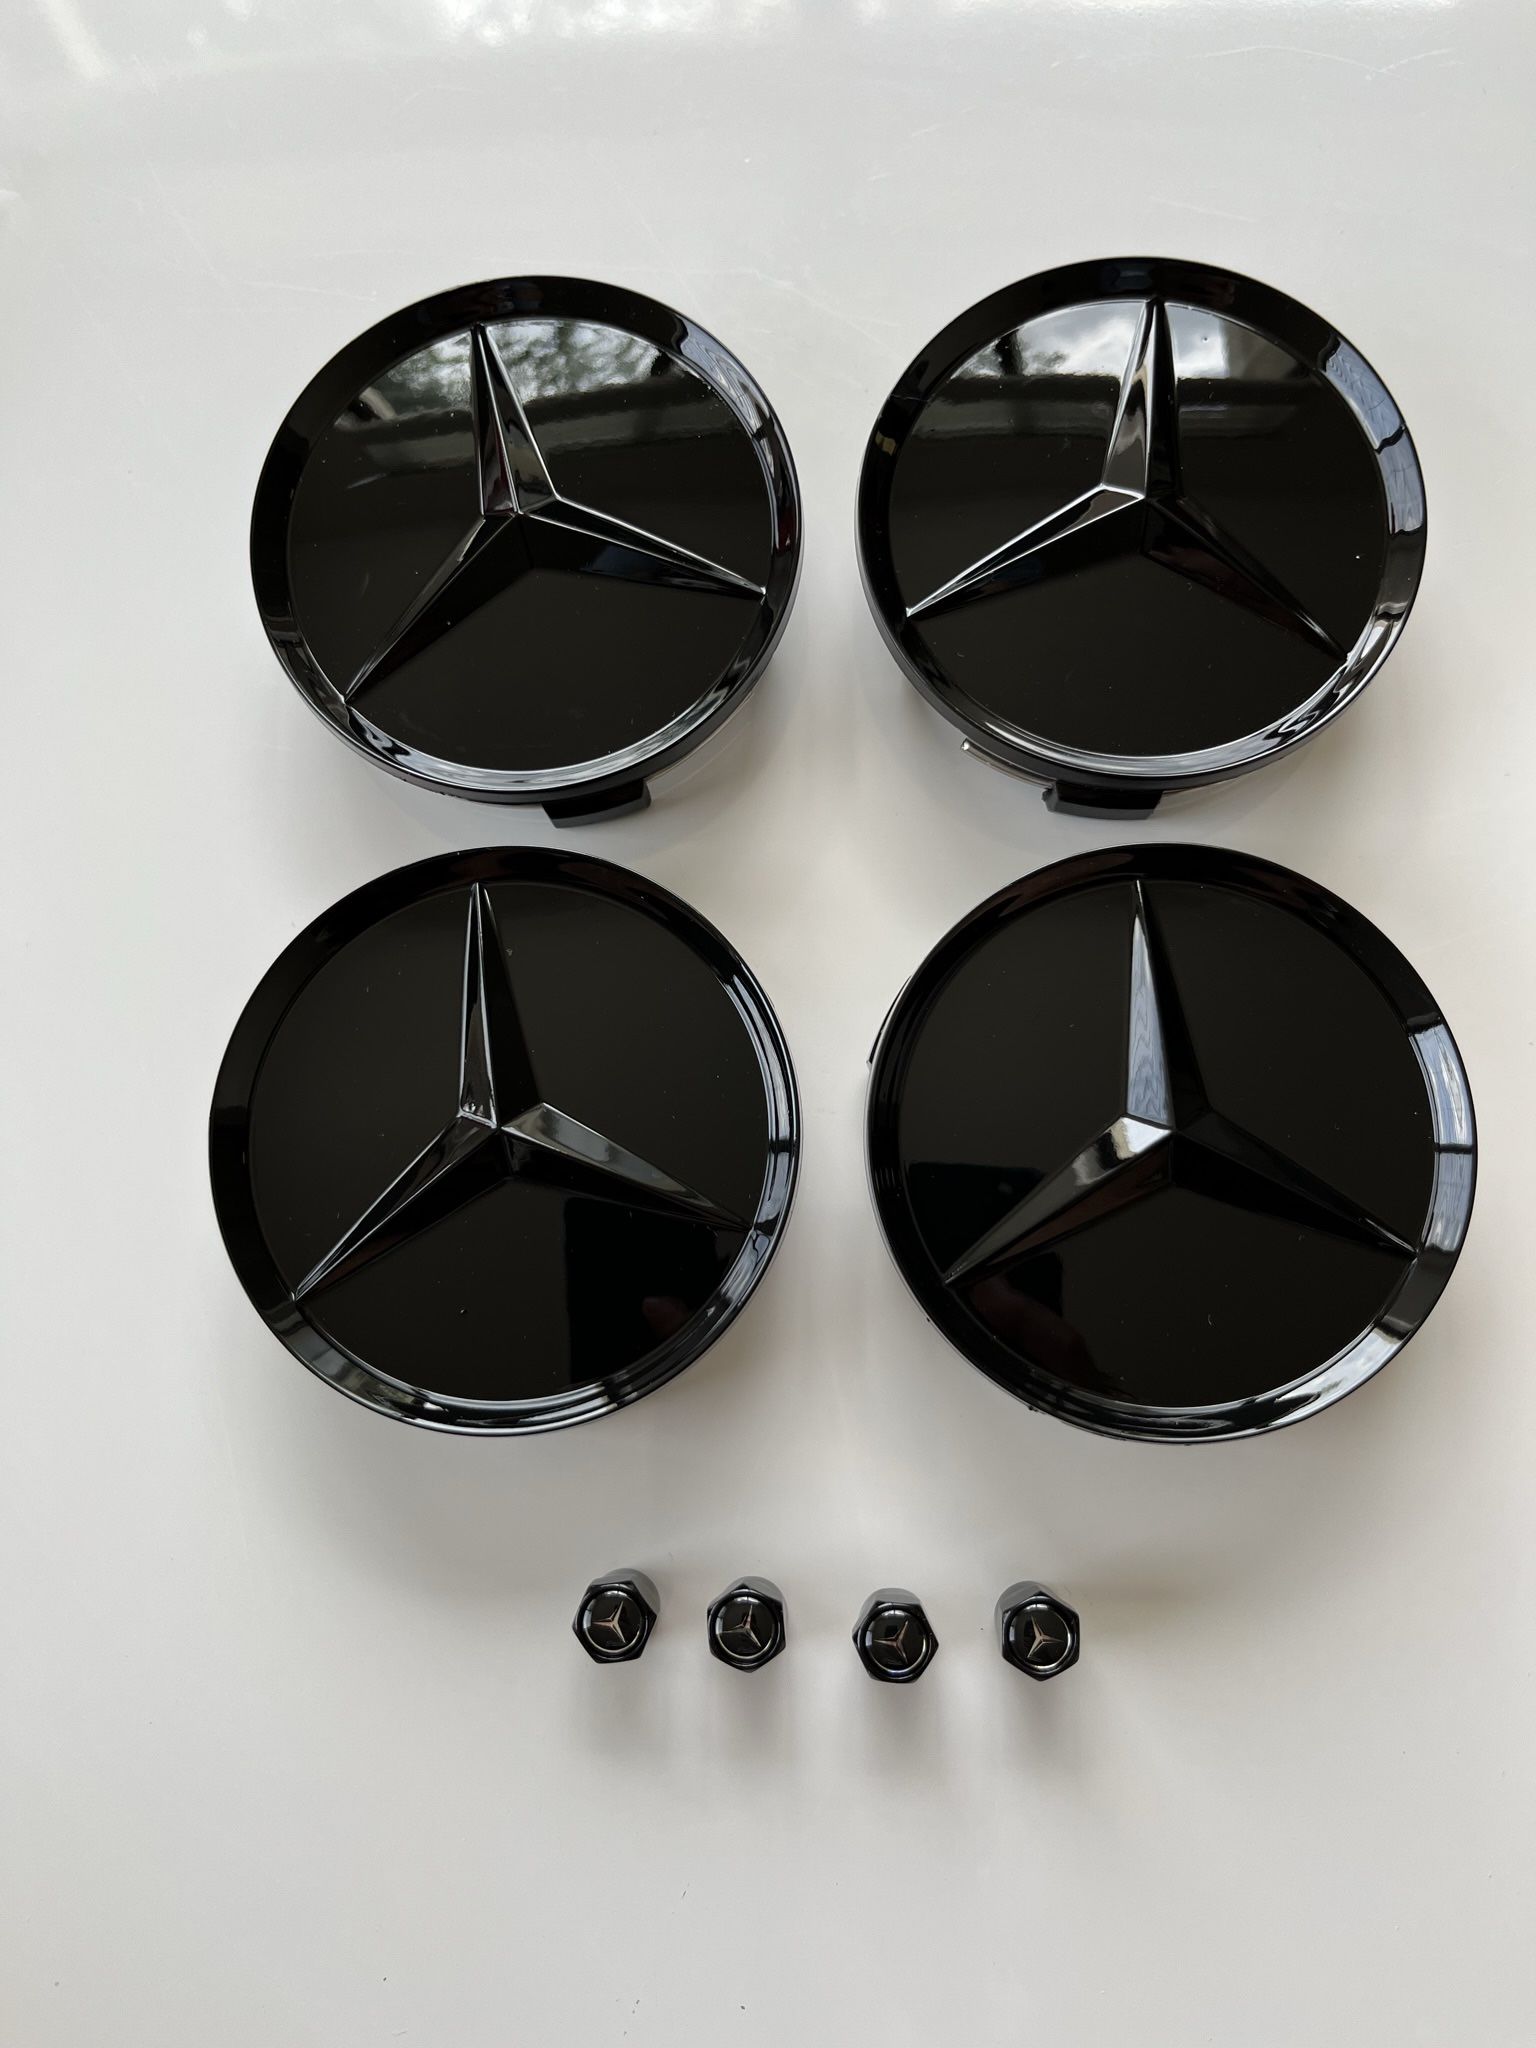 Fits Mercedes Benz Wheel Rim Center Caps And Tire Air Caps  (8 Pieces Set)